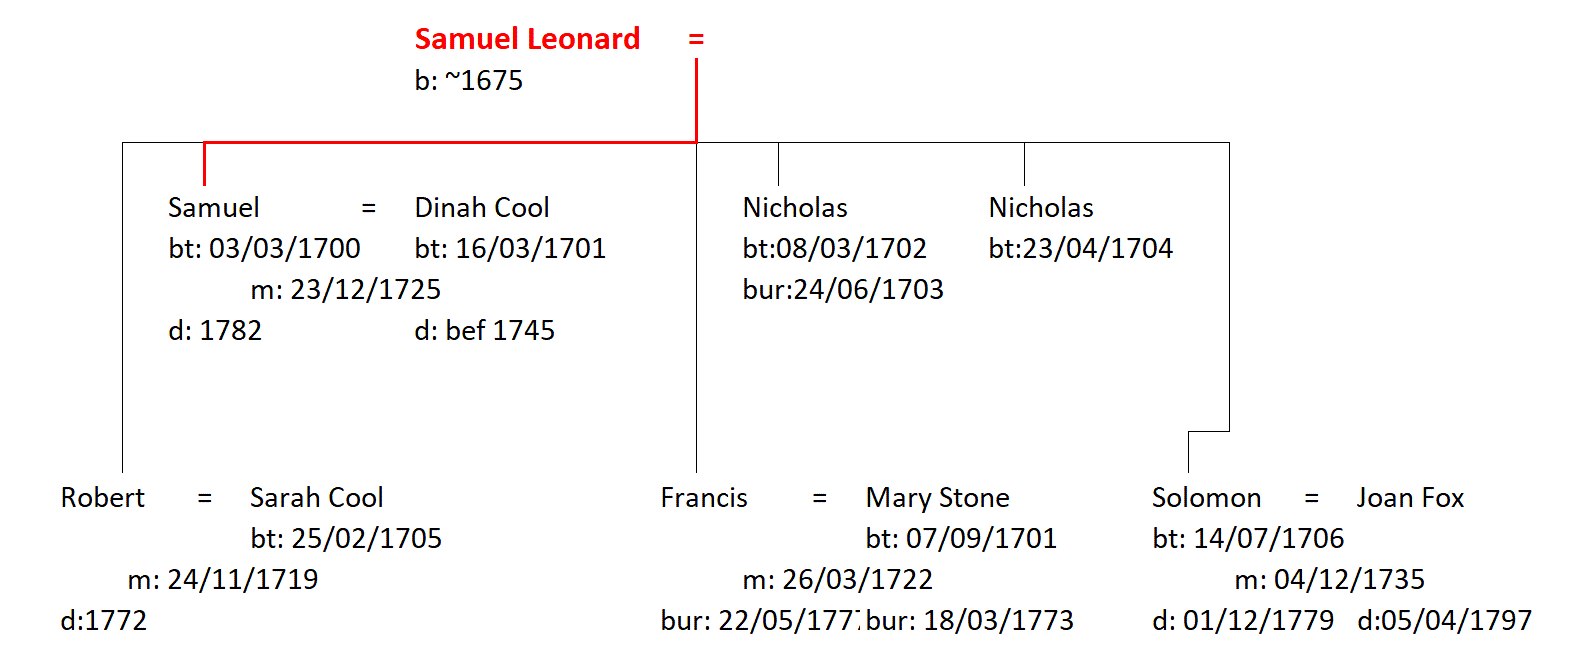 Figure 1: The Family of Samuel Leonard